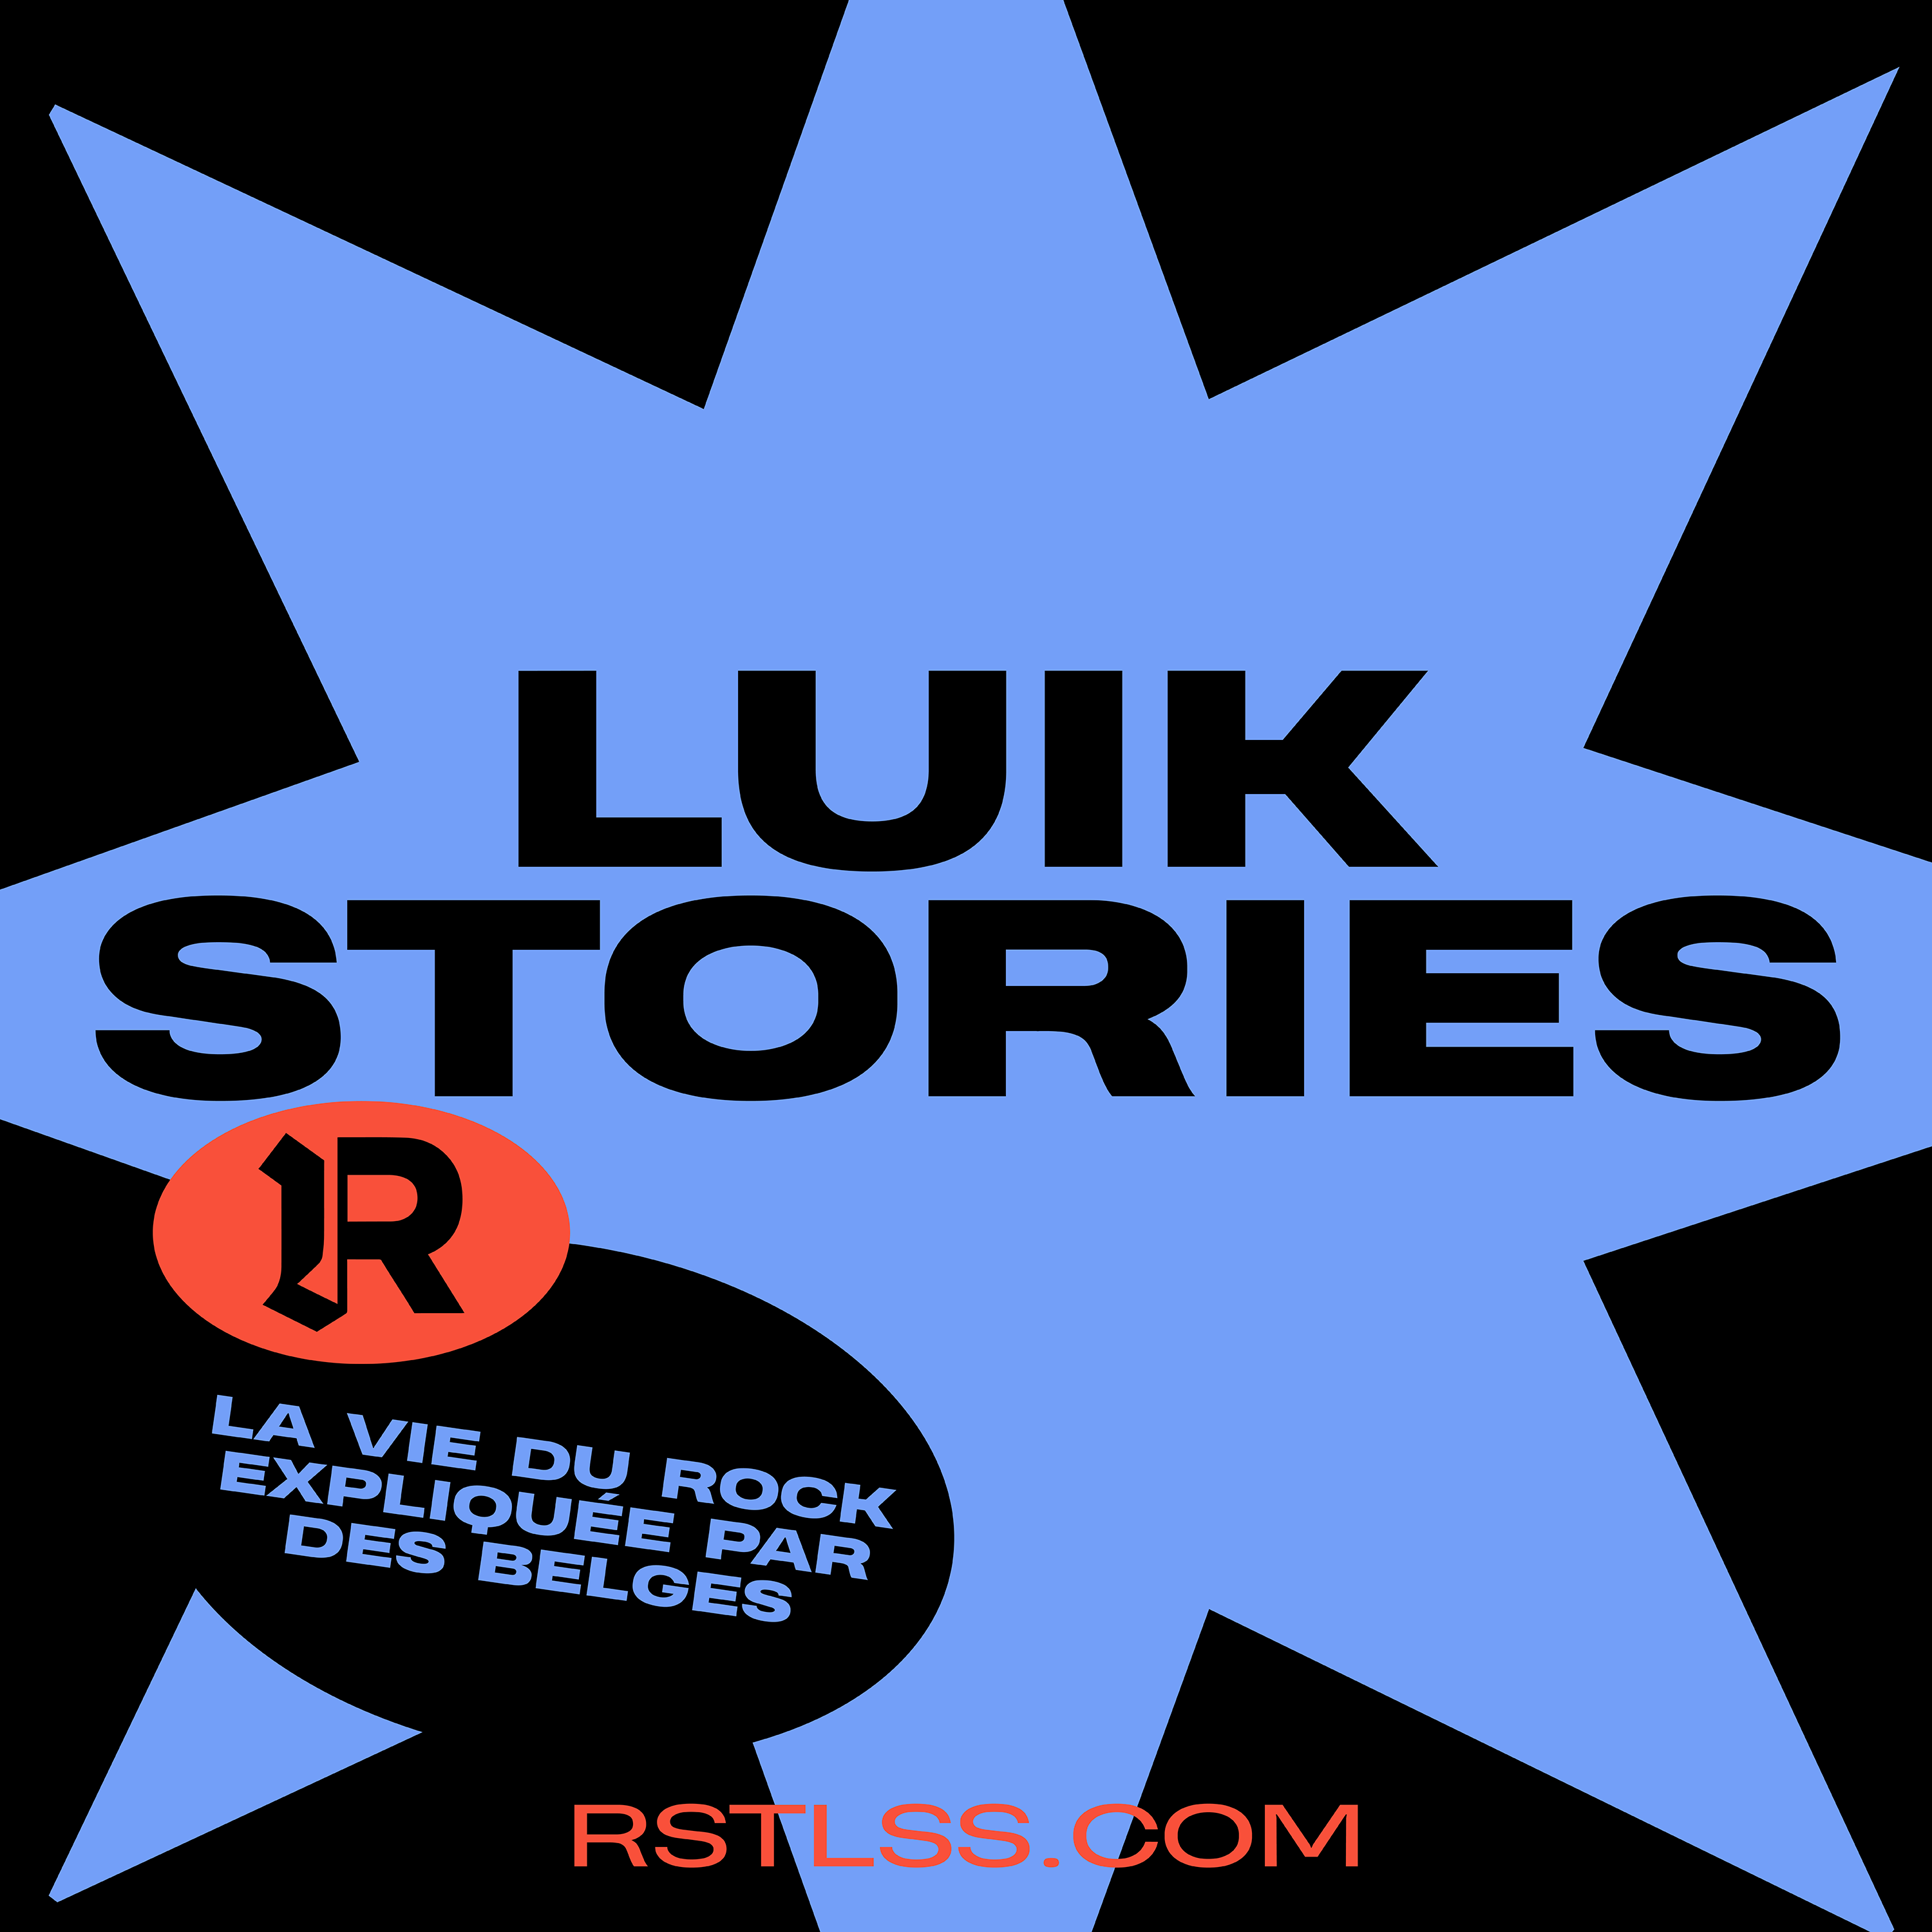 LUIK STORIES #7 – Rewind 2020 Avec Léo de Fauchage Collectif et LN-VR.